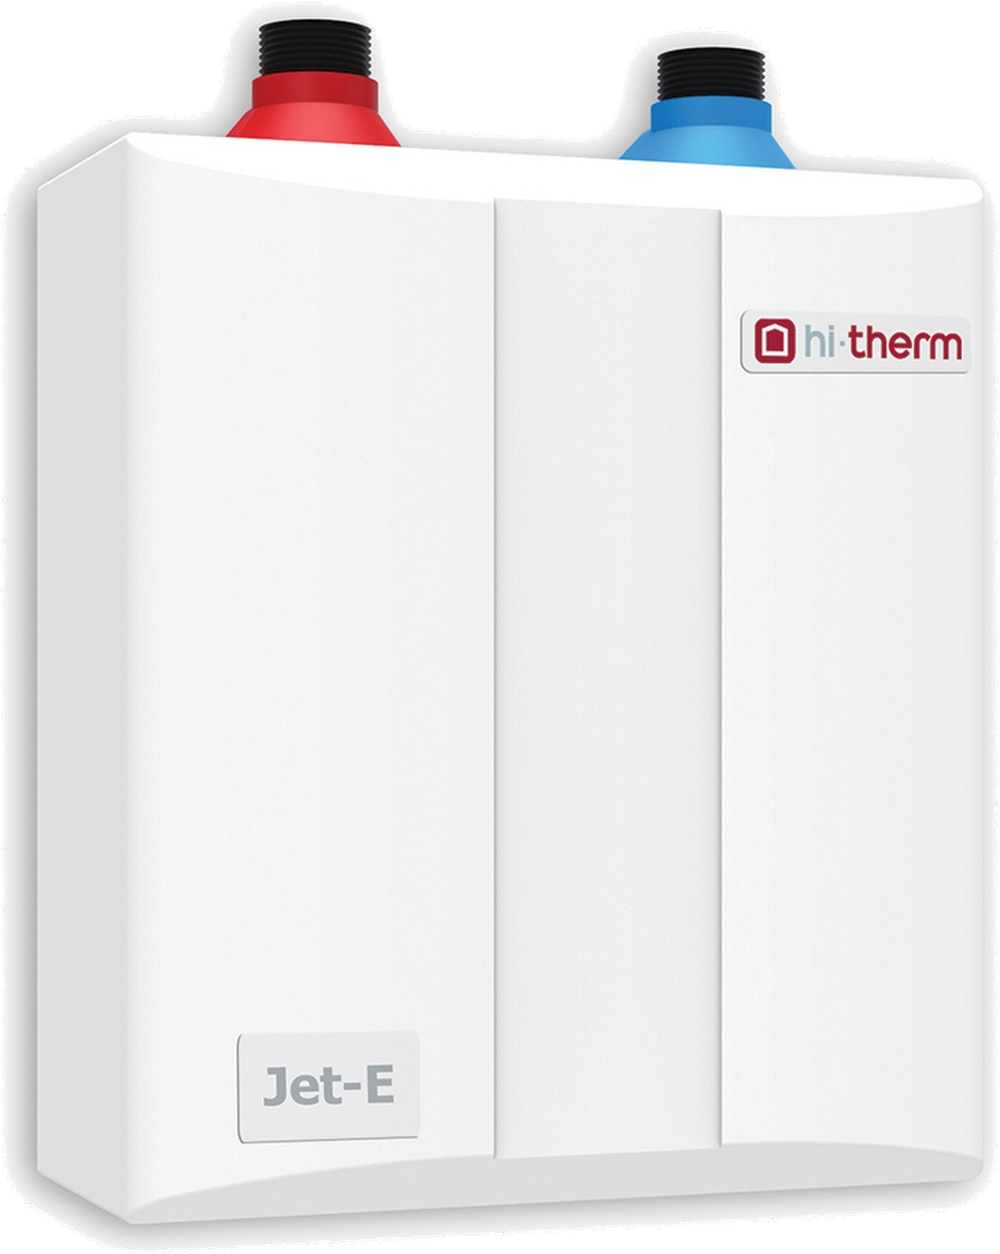 Безнапорный проточный водонагреватель Hi-Therm JET-E 5.5